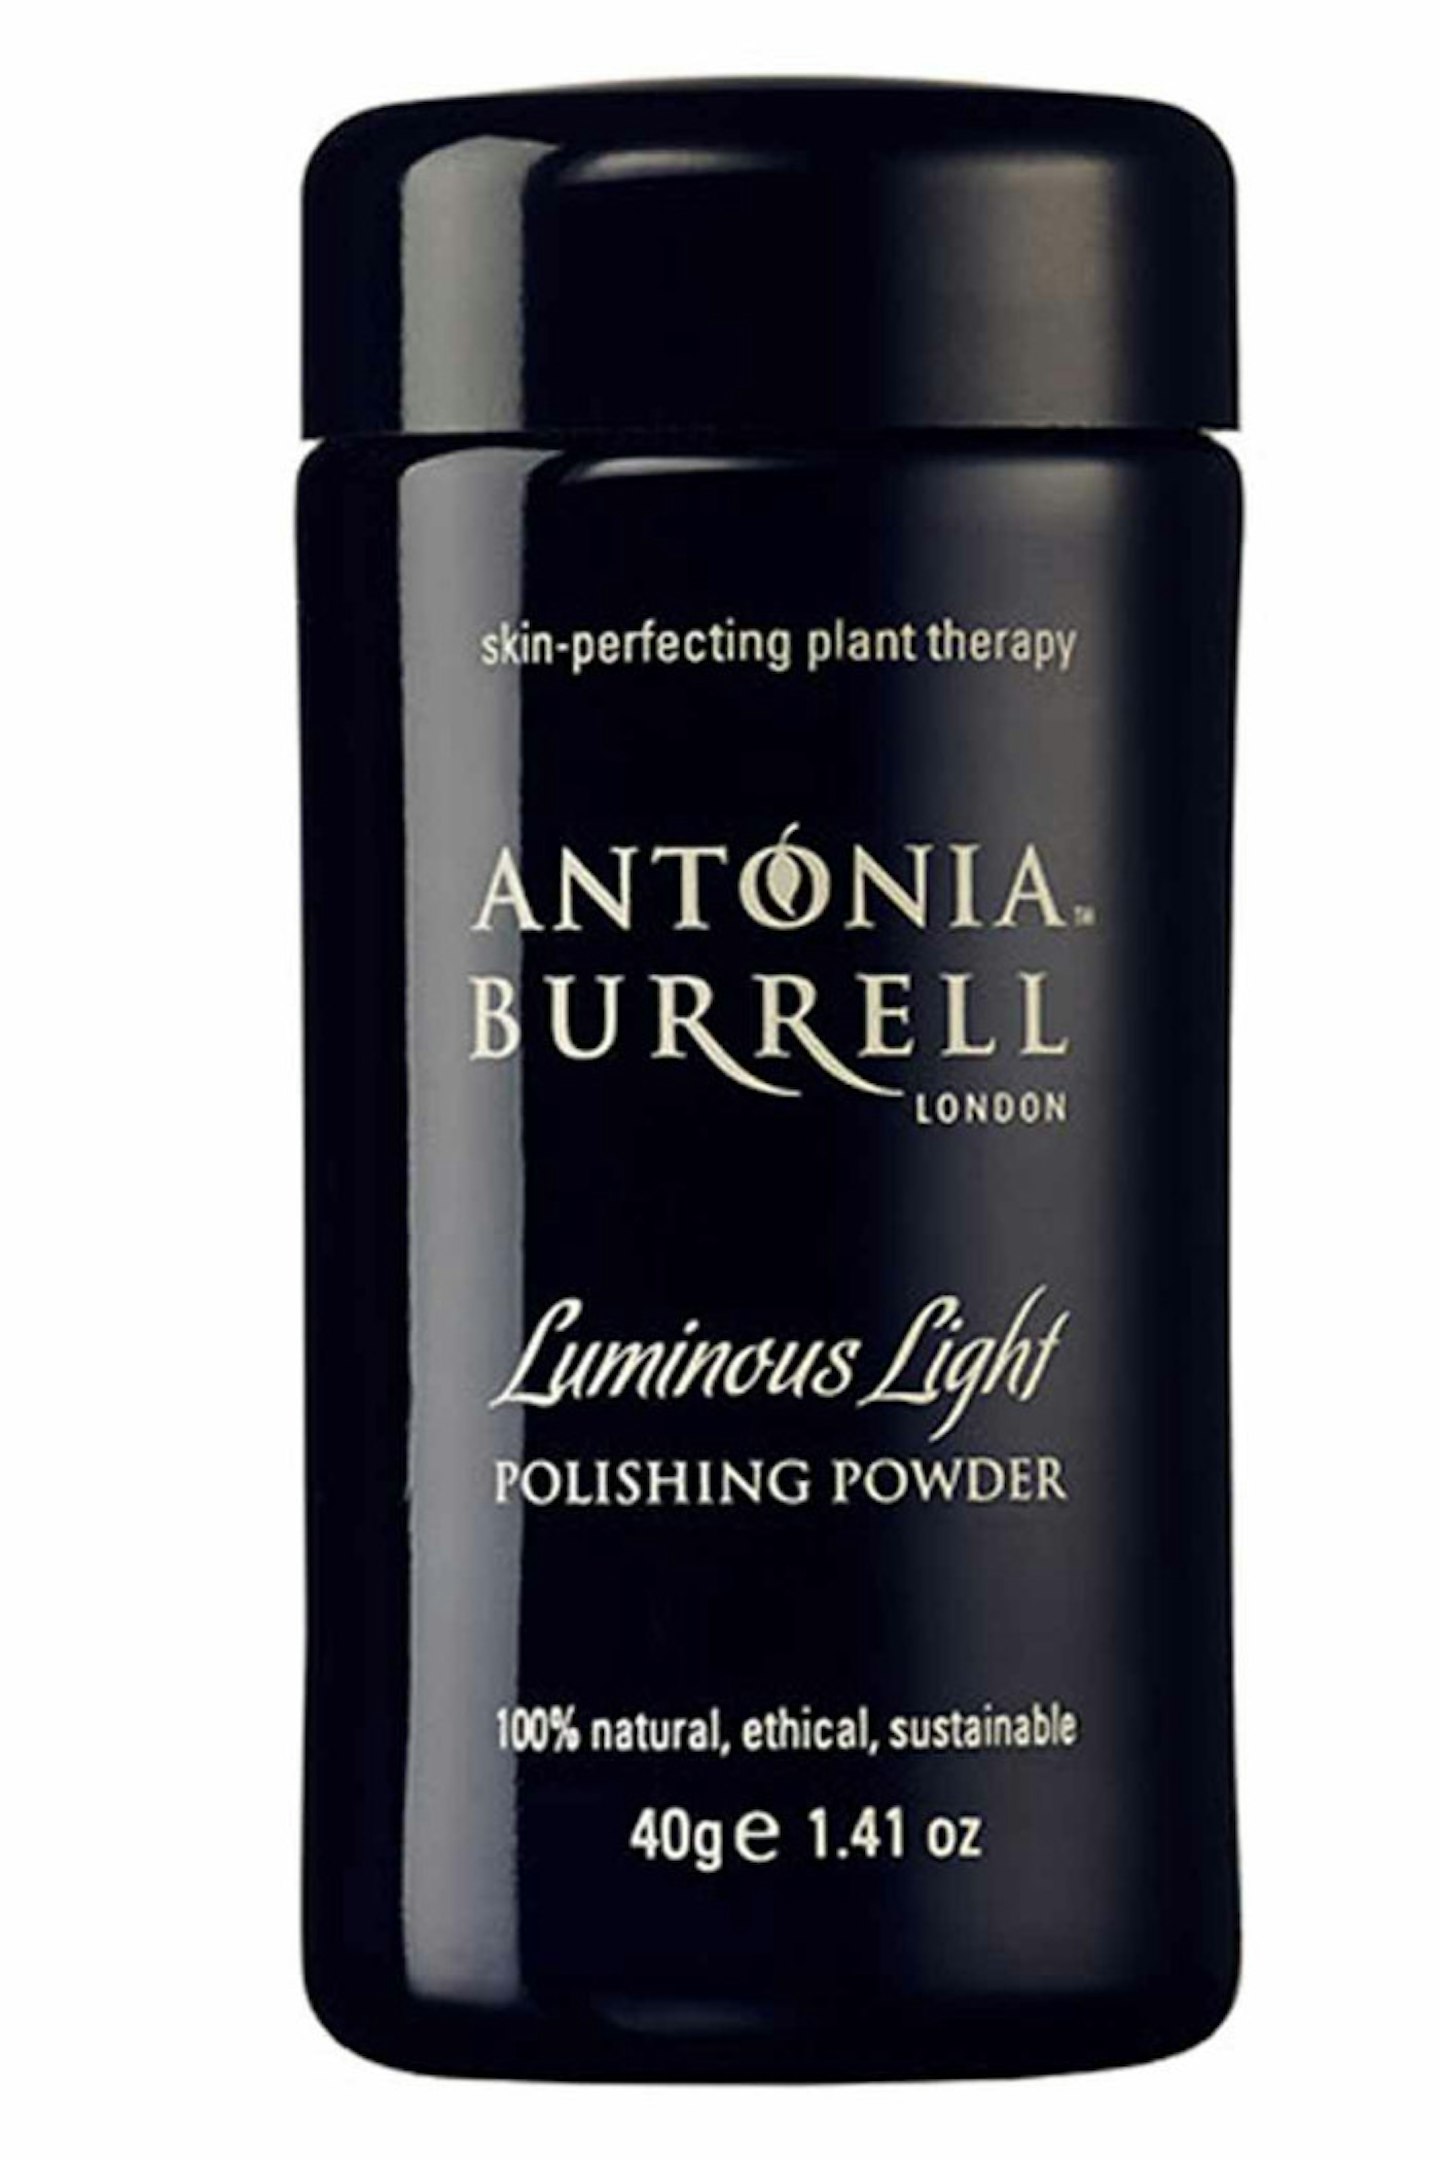 1. Antonia Burrell Light Luminous Polishing Powder, £45.00